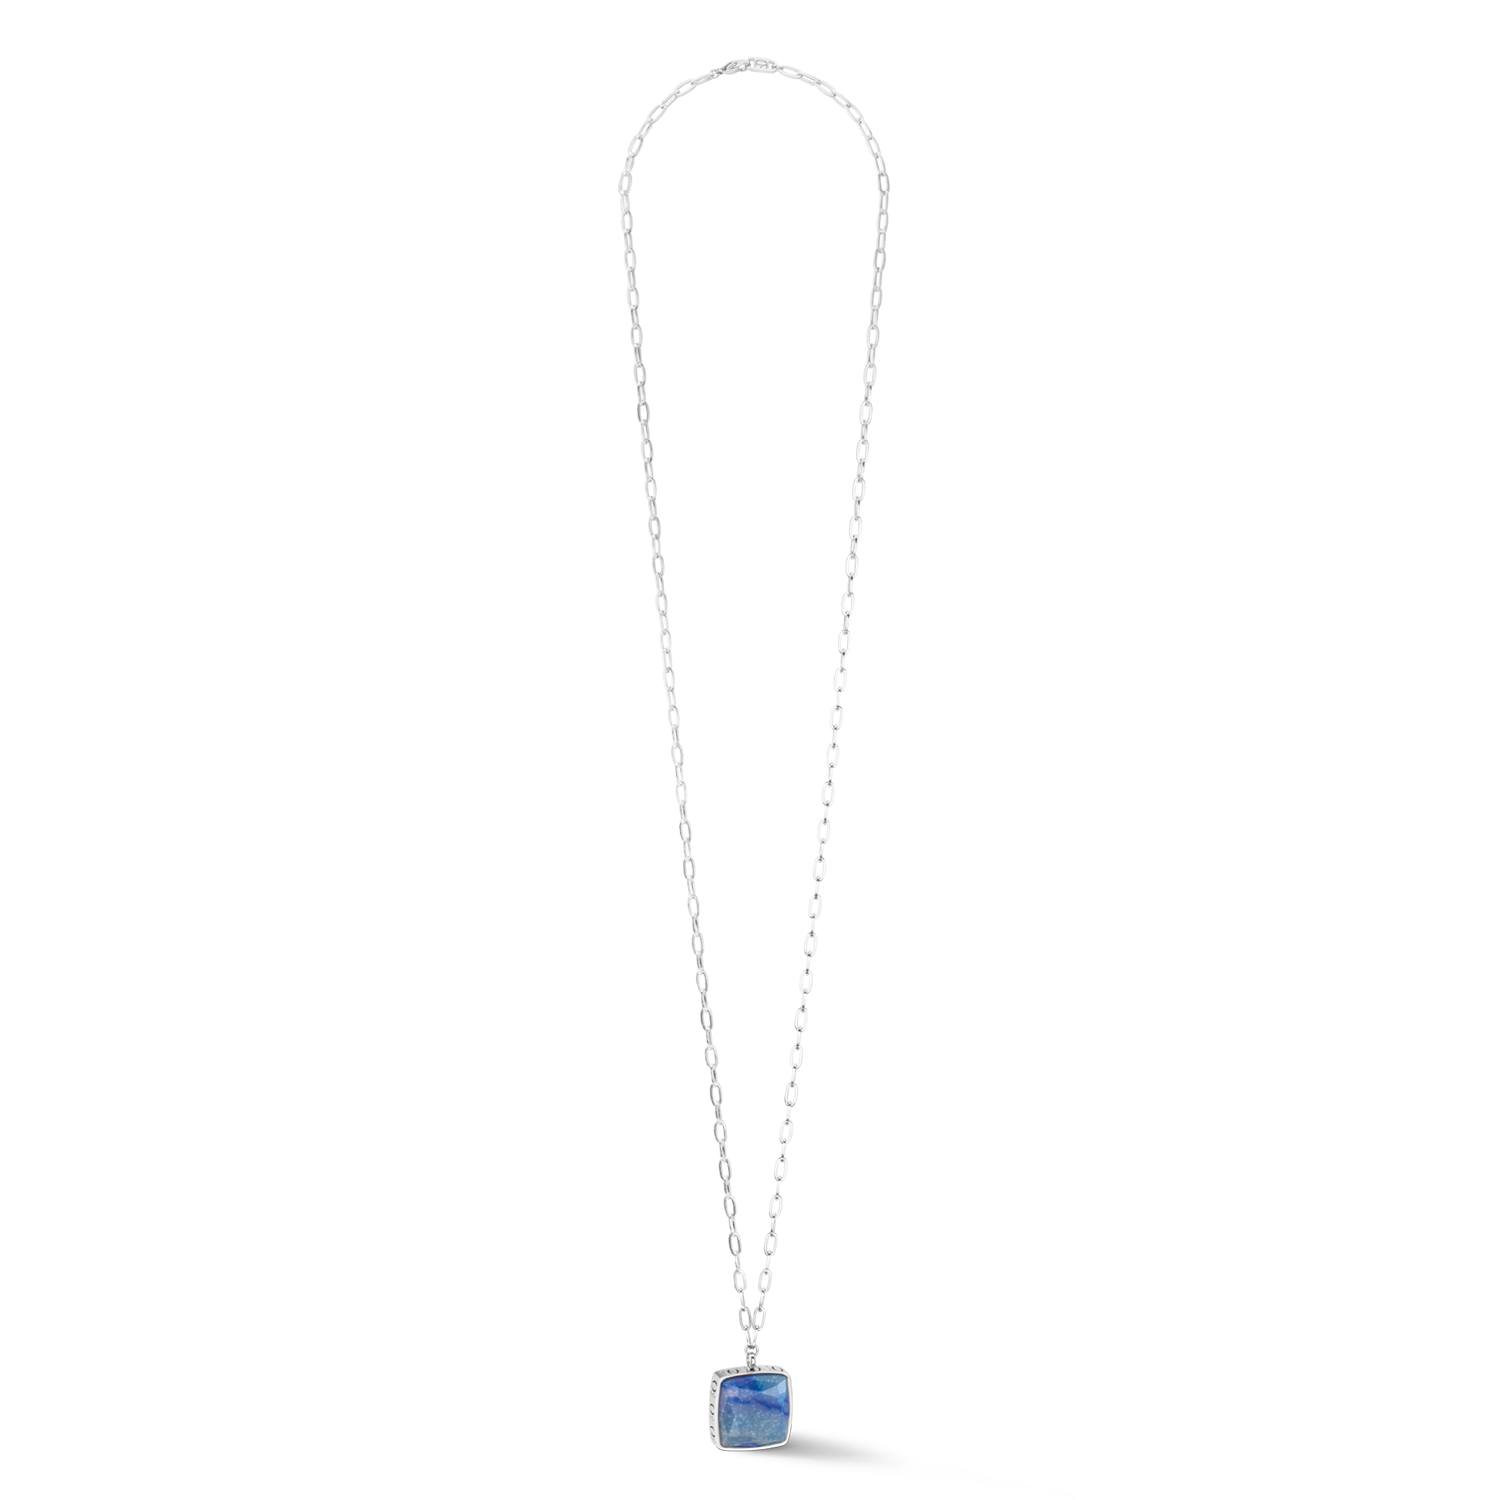 Collana OE Amuleto Quadrato Avventurina argento-blu